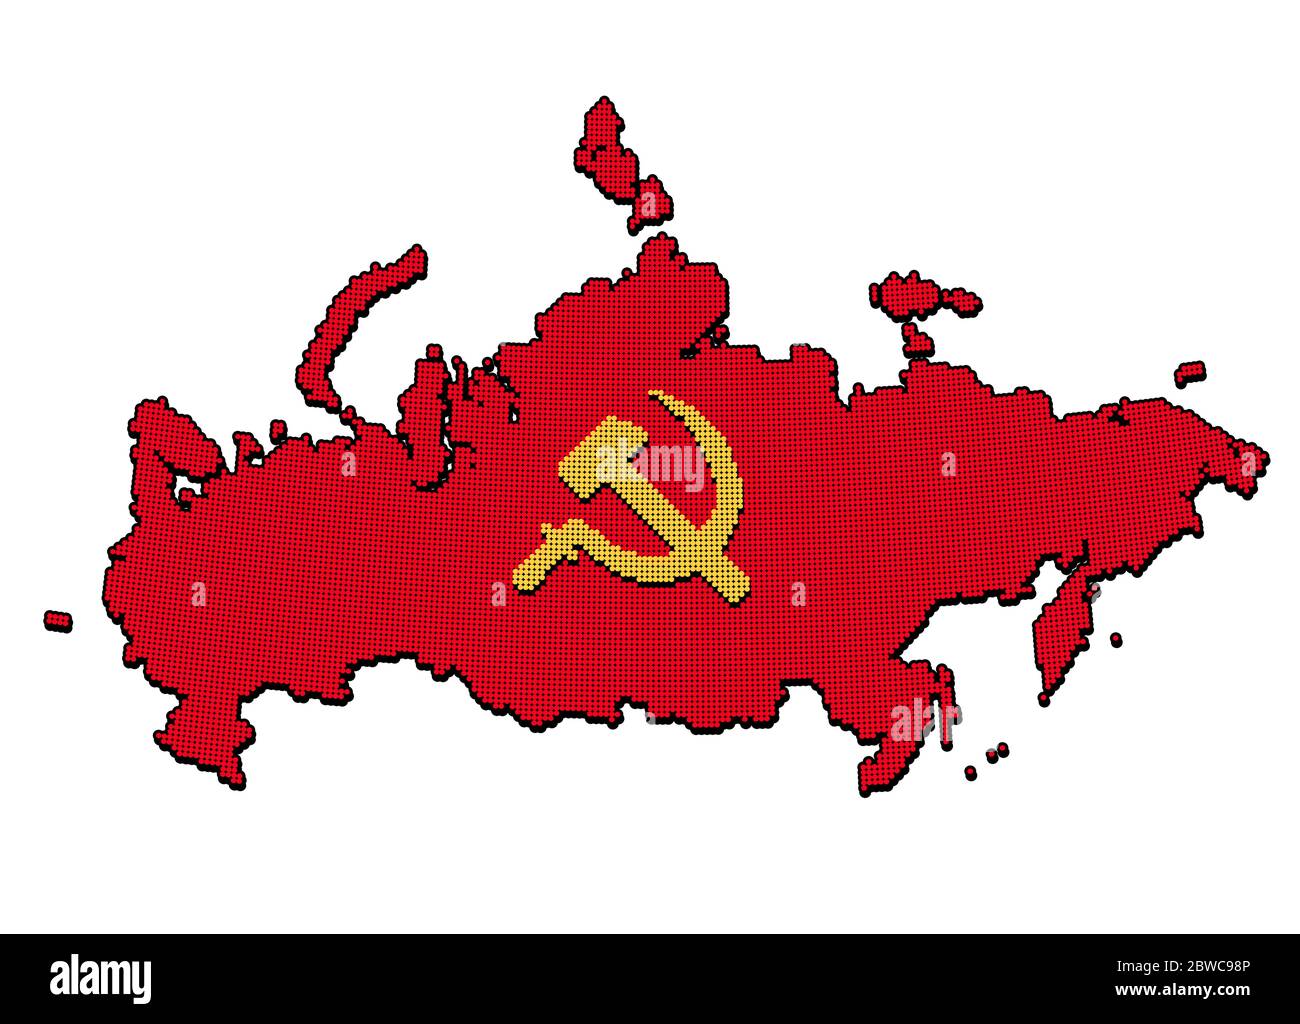 Stilisierte UdSSR-Karte mit Hammer und Sichel, kommunistisches Russland-Symbol. Pixel-Punktmuster. Isolierte Vektordarstellung. Stock Vektor